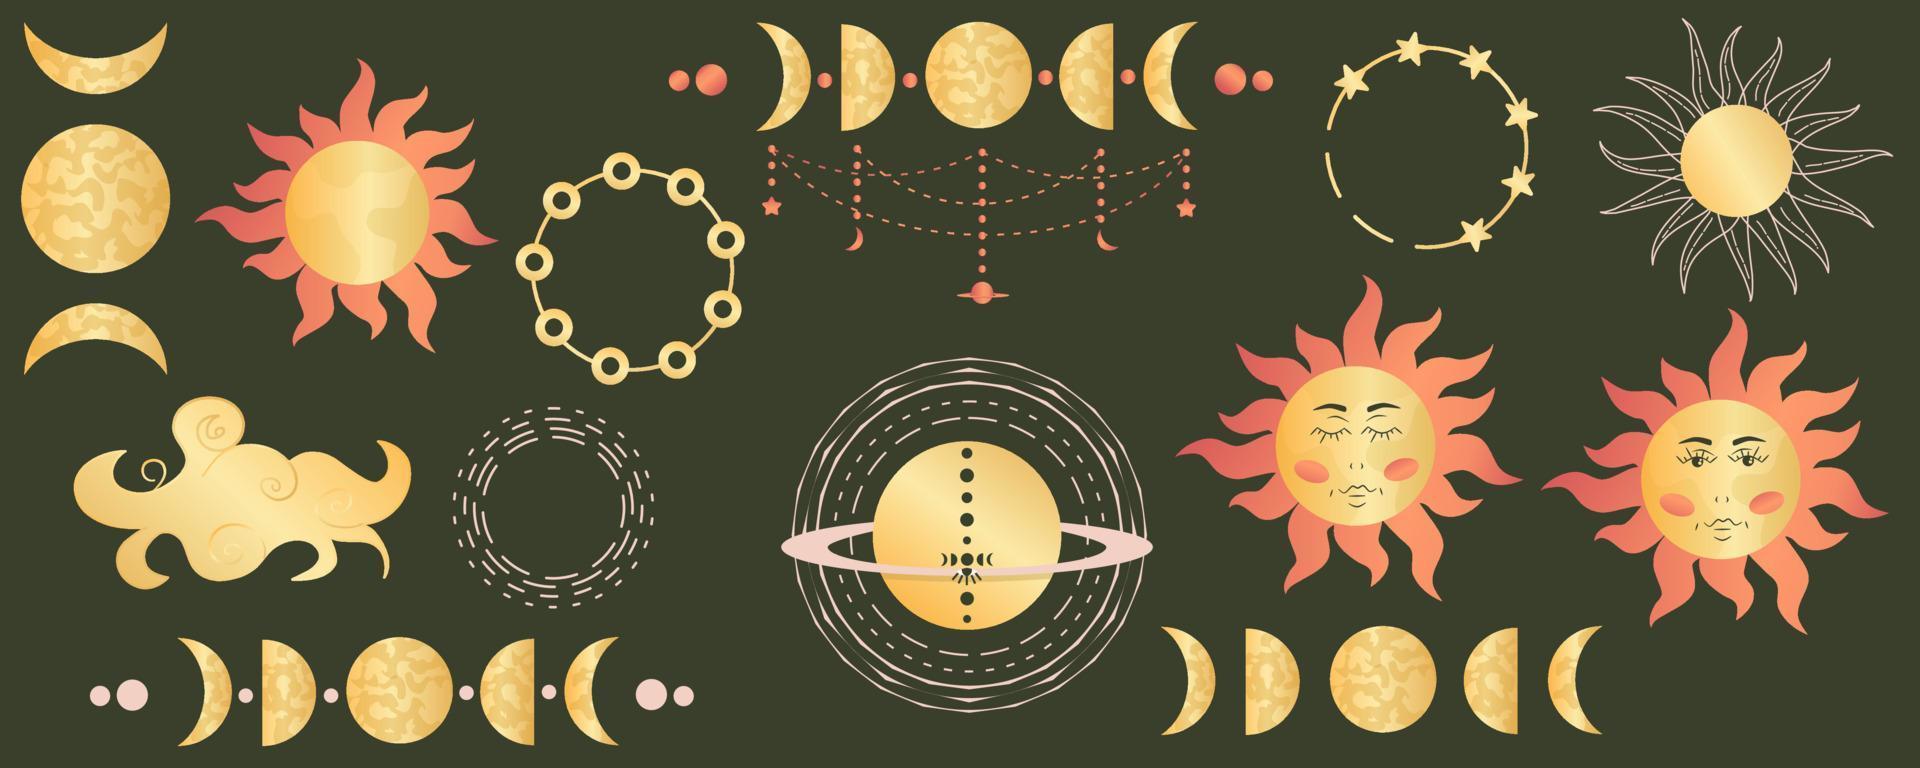 fasen van de maan, hemelse zon in set op donkere achtergrond. mystieke heilige astrologie met sterren, wolk. gouden figuren, elementen in hemellichamen. vectorillustratie. maanstanden en zon met gezicht vector